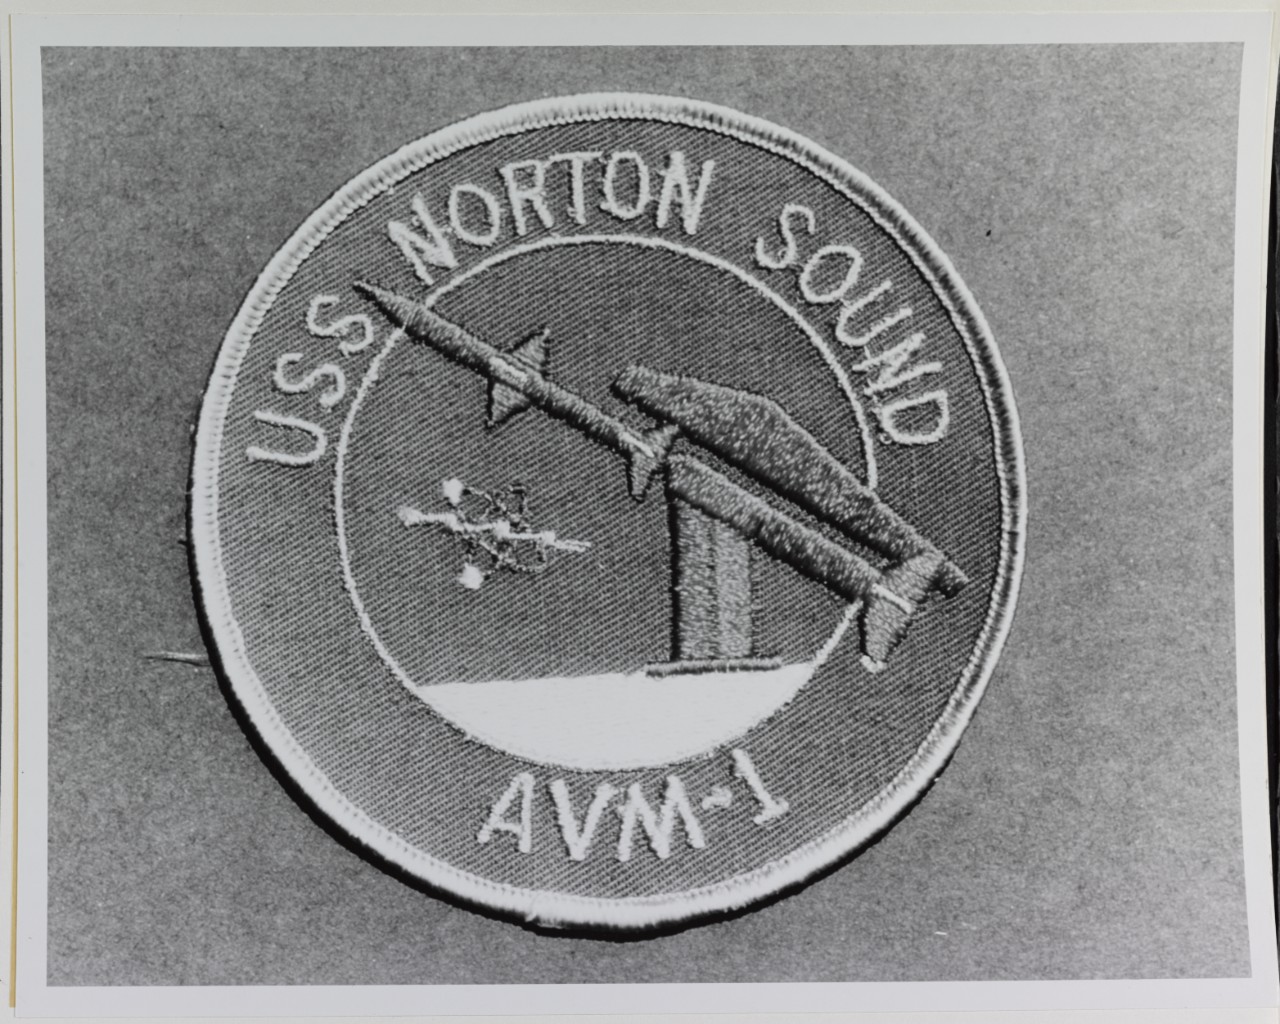 Insignia: USS NORTON SOUND (AVM-1)